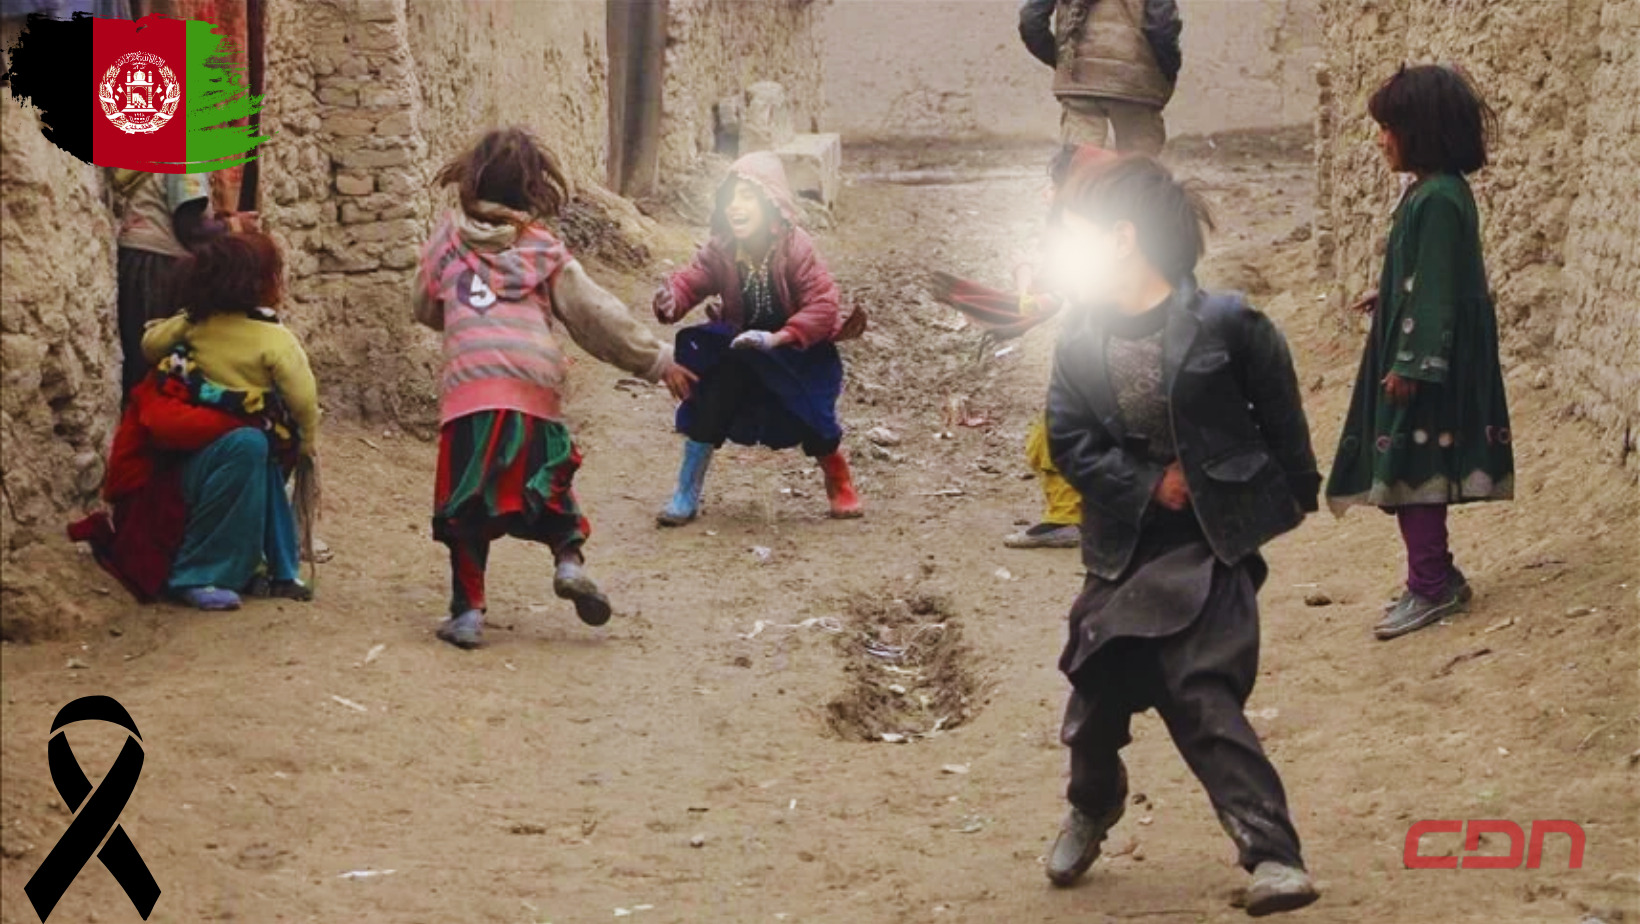 Al menos 9 niños murieron tras explotar una mina con la que jugaban en Afganistán. Foto: CDN Digital